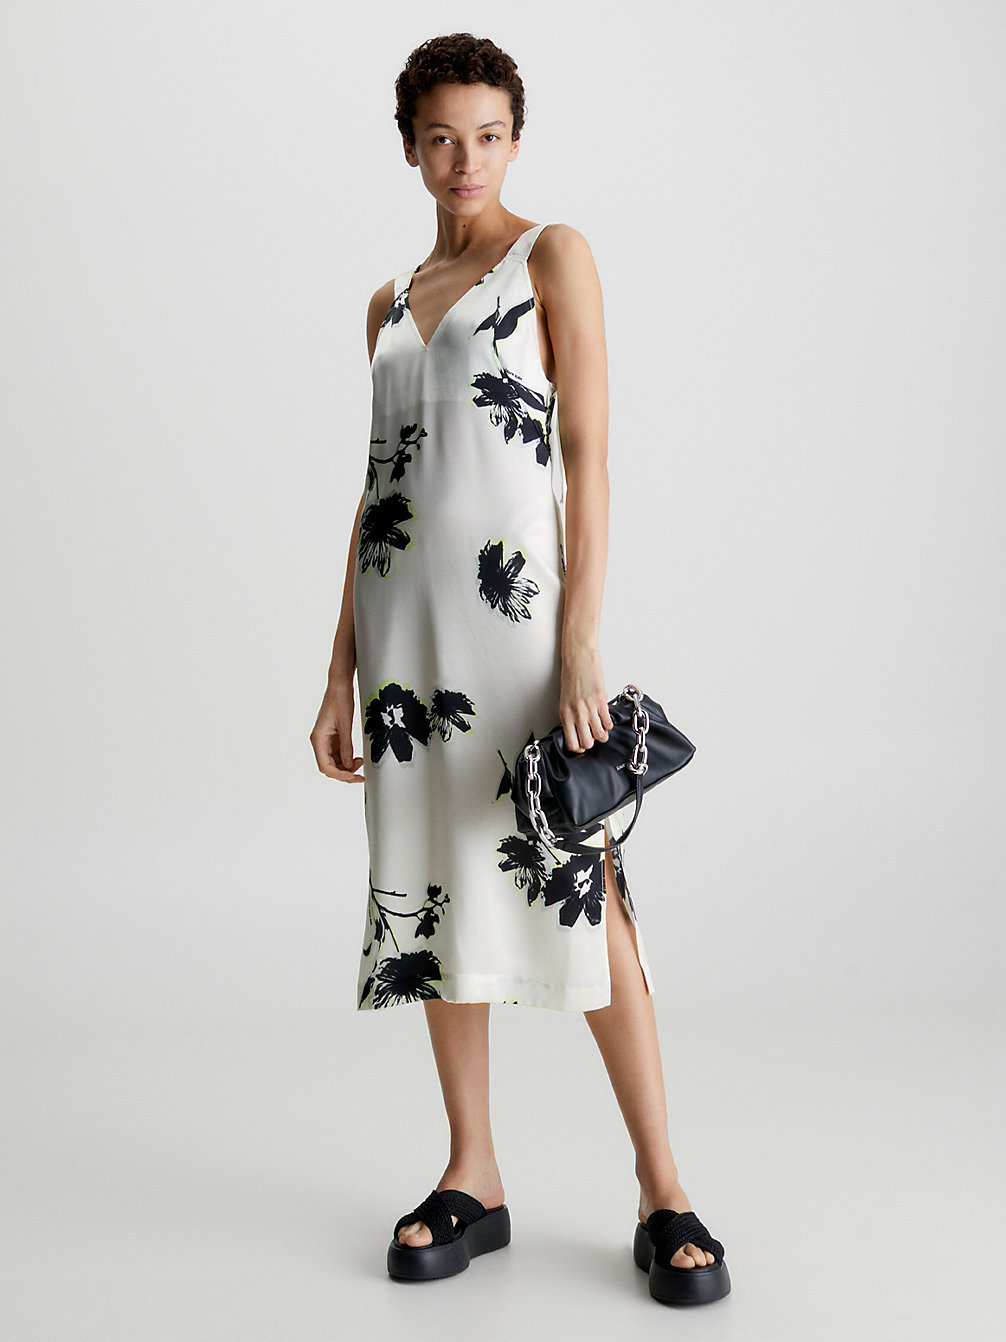 MODERN FLORAL / VANILLA ICE Slim Floral Slip Dress undefined women Calvin Klein